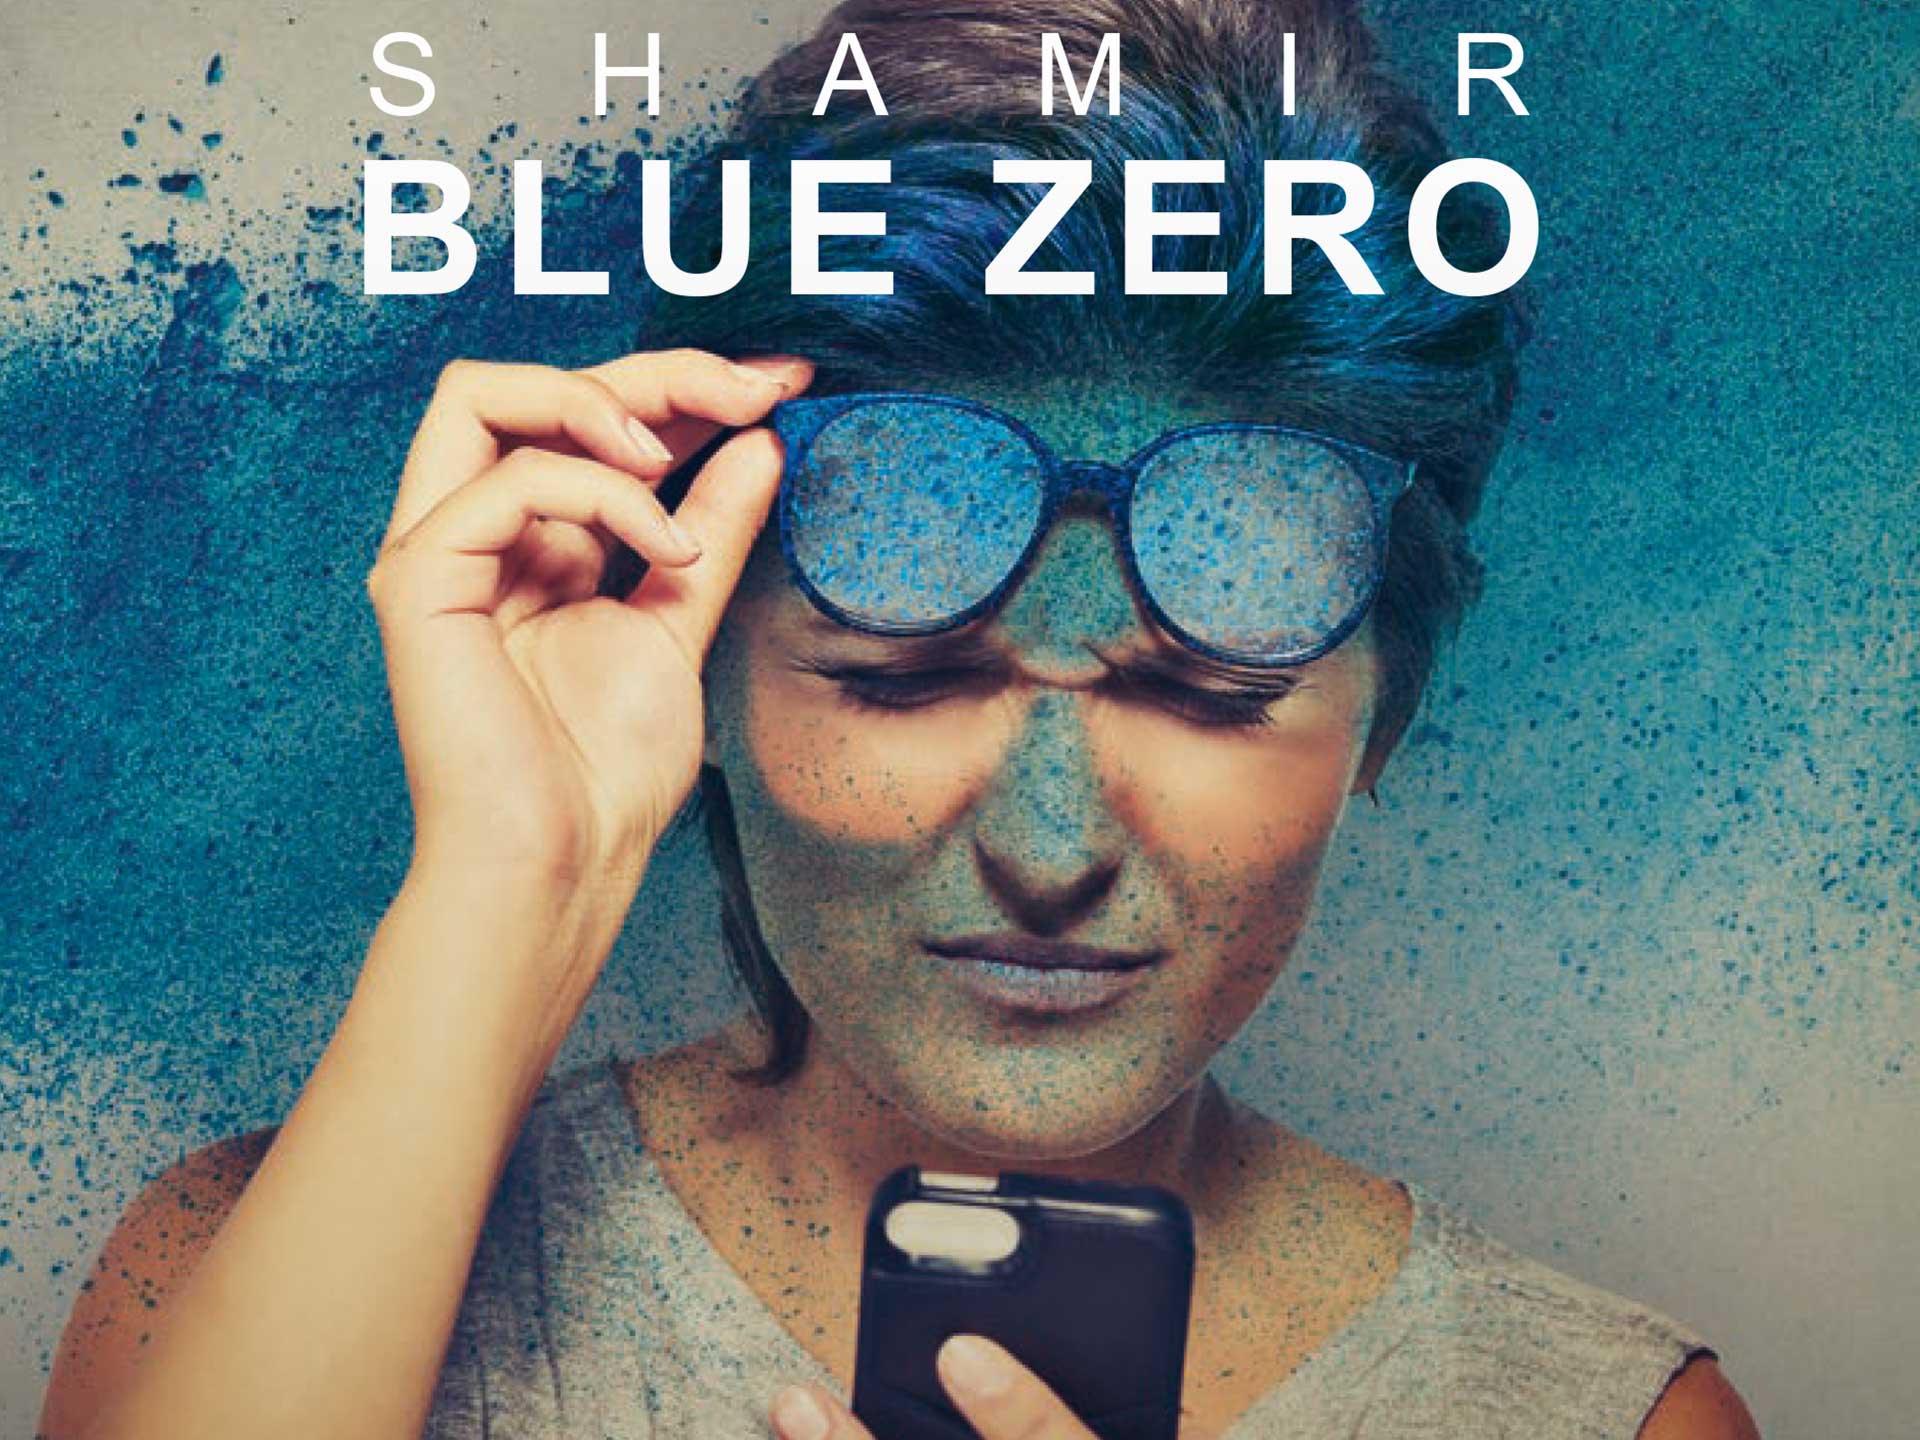 Blue Zero di Shamir, 1 lente in omaggio fino alla fine di dicembre, per difendere i tuoi occhi dalle radiazioni blu emesse da schermi e luce led